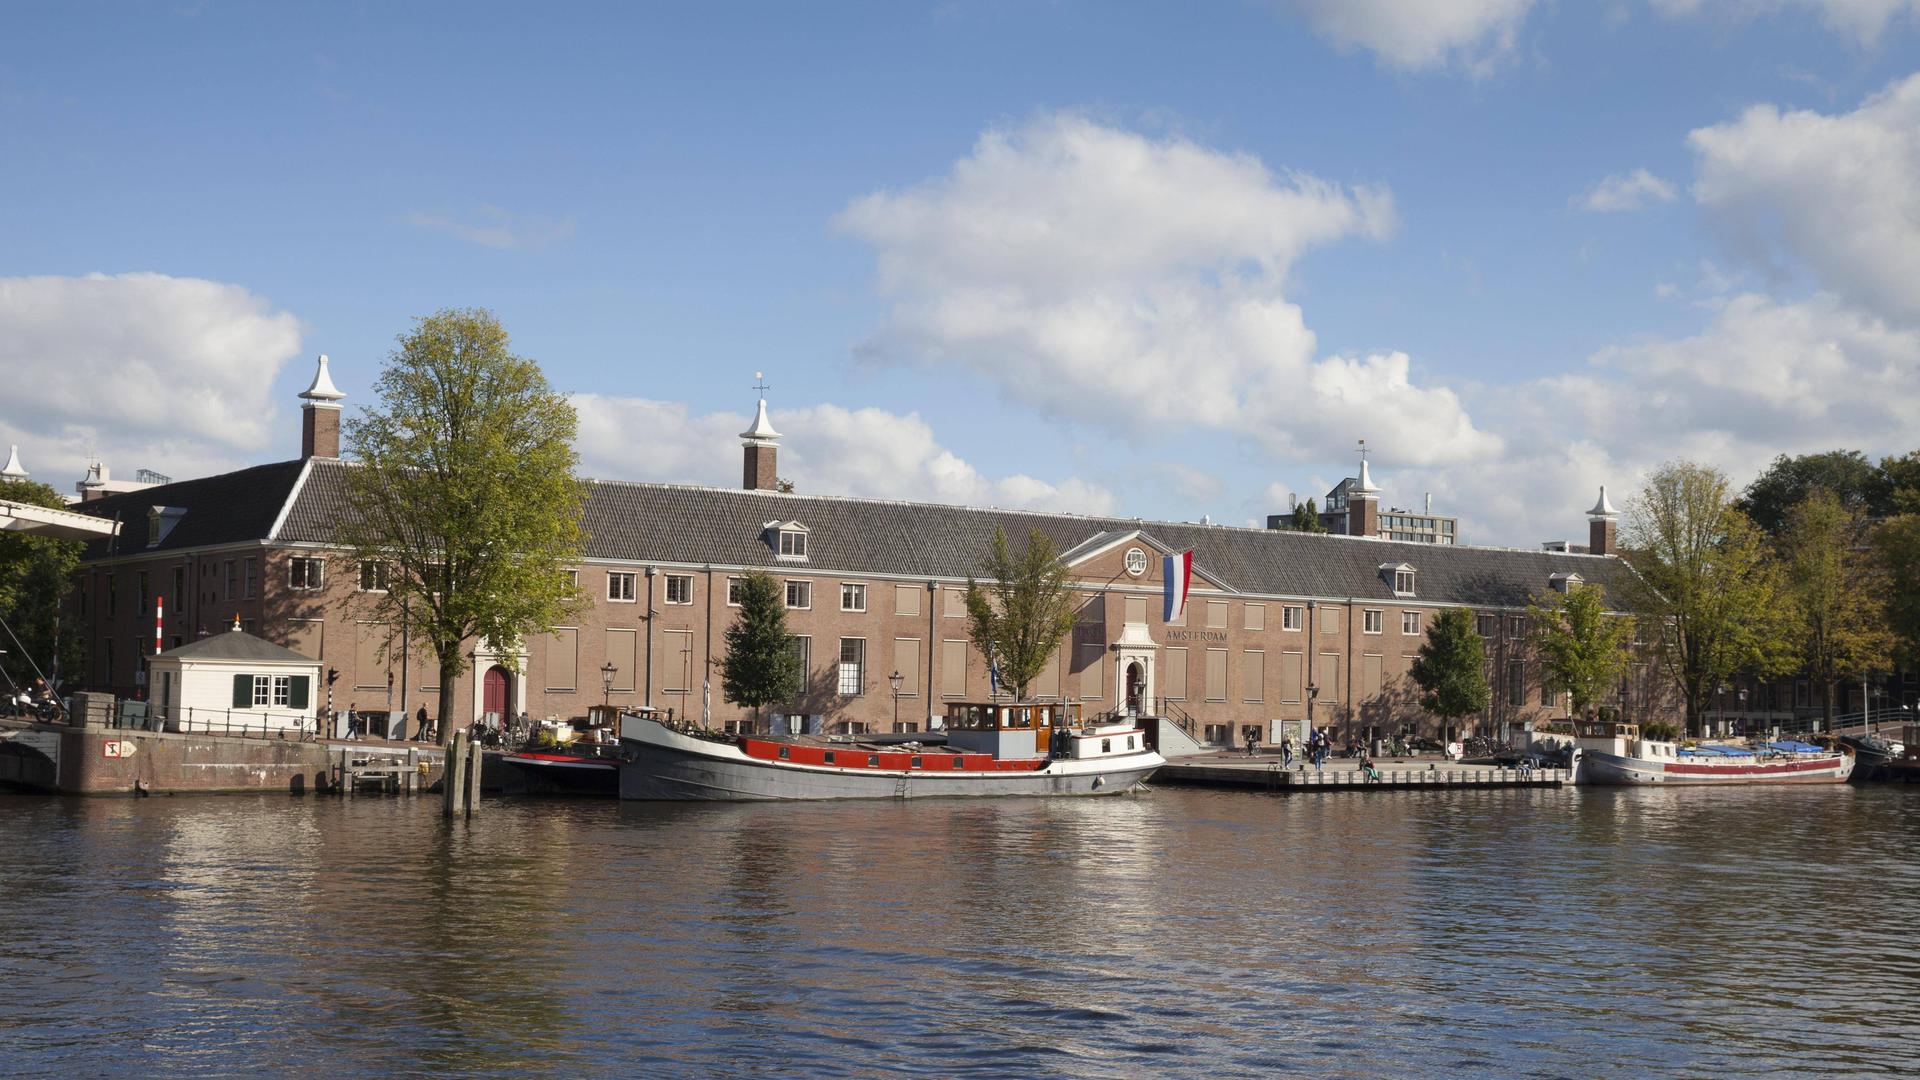 Das Kunstmuseum Hermitage in Amsterdam, Niederlande